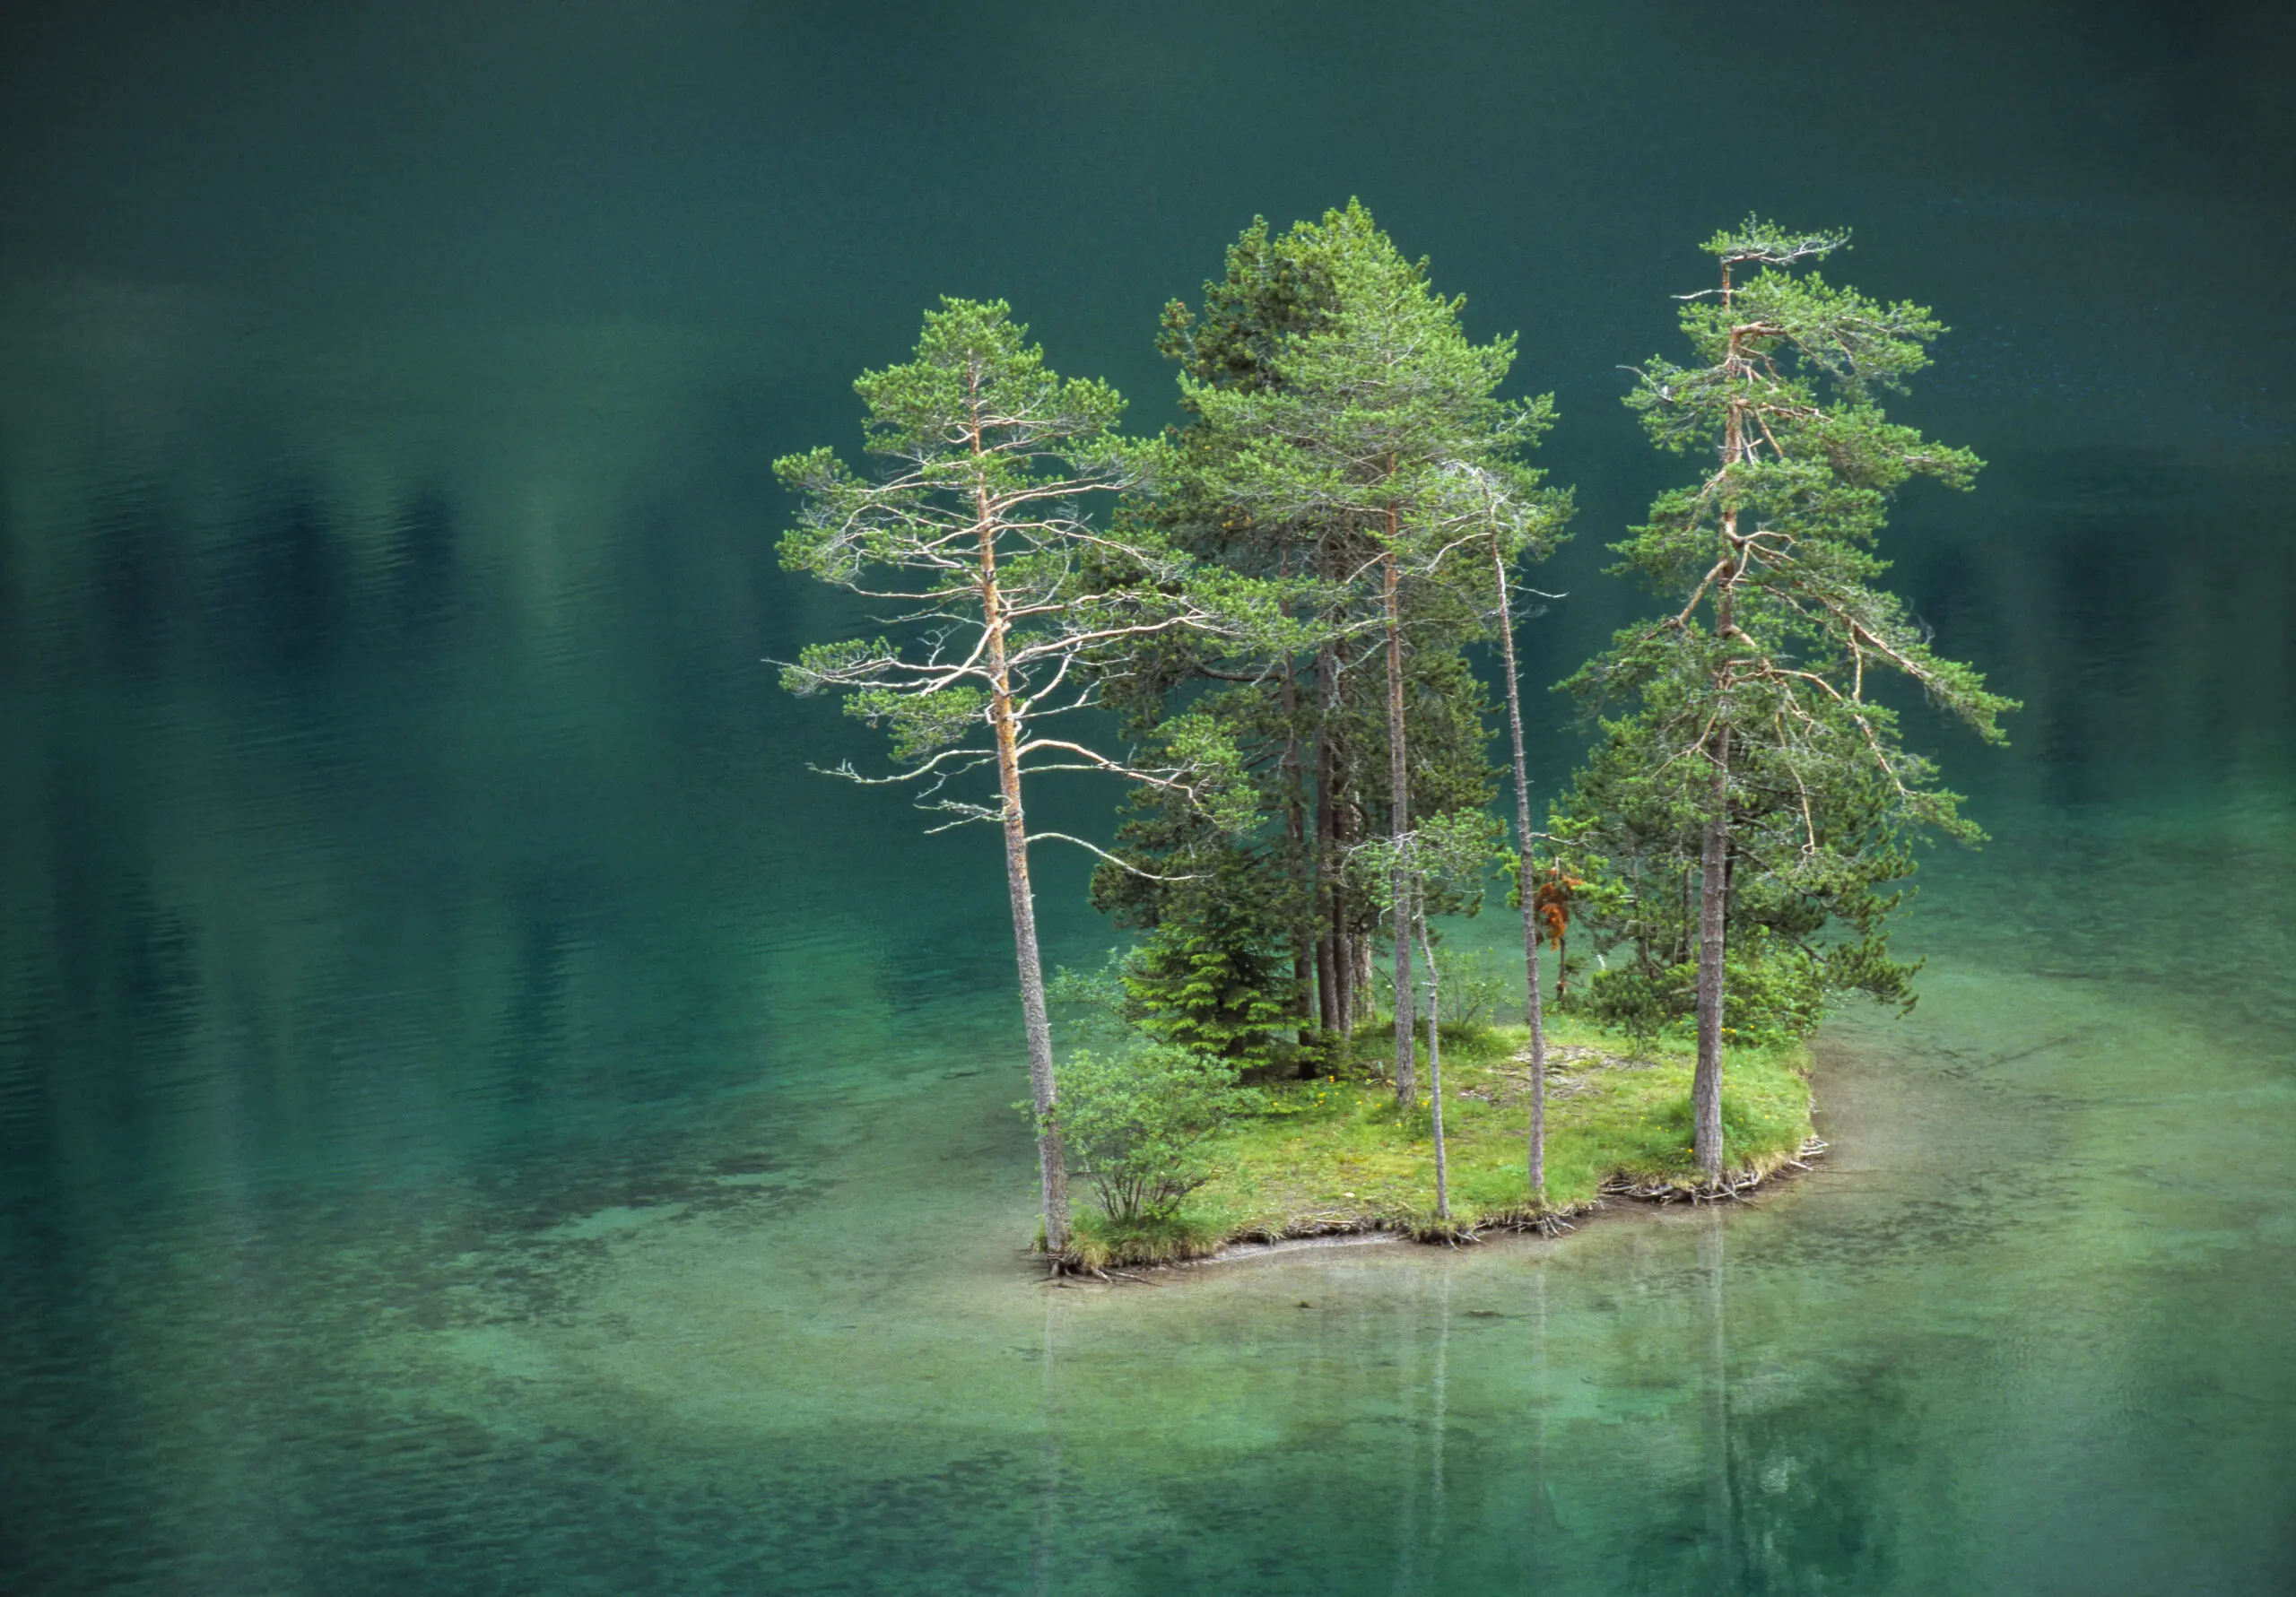 Wandbild (244) Dream Island präsentiert: Wasser,Landschaften,Gewässer,Seen